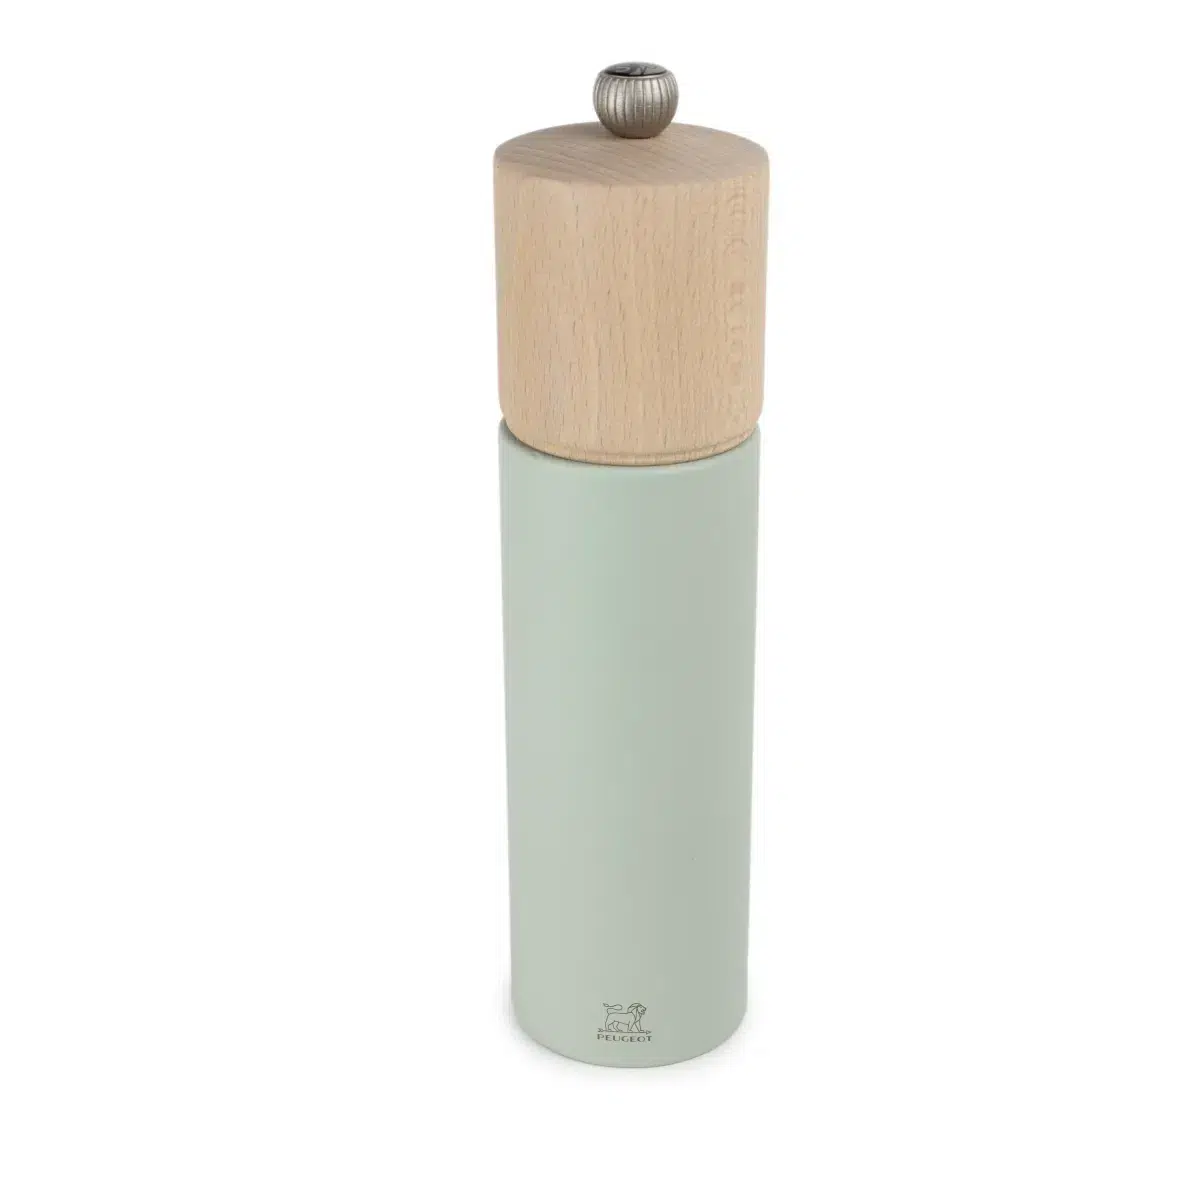 Eine Salz- oder Pfeffermühle im minimalistischen Design mit hellblauem Korpus und natürlichem Holzdeckel.